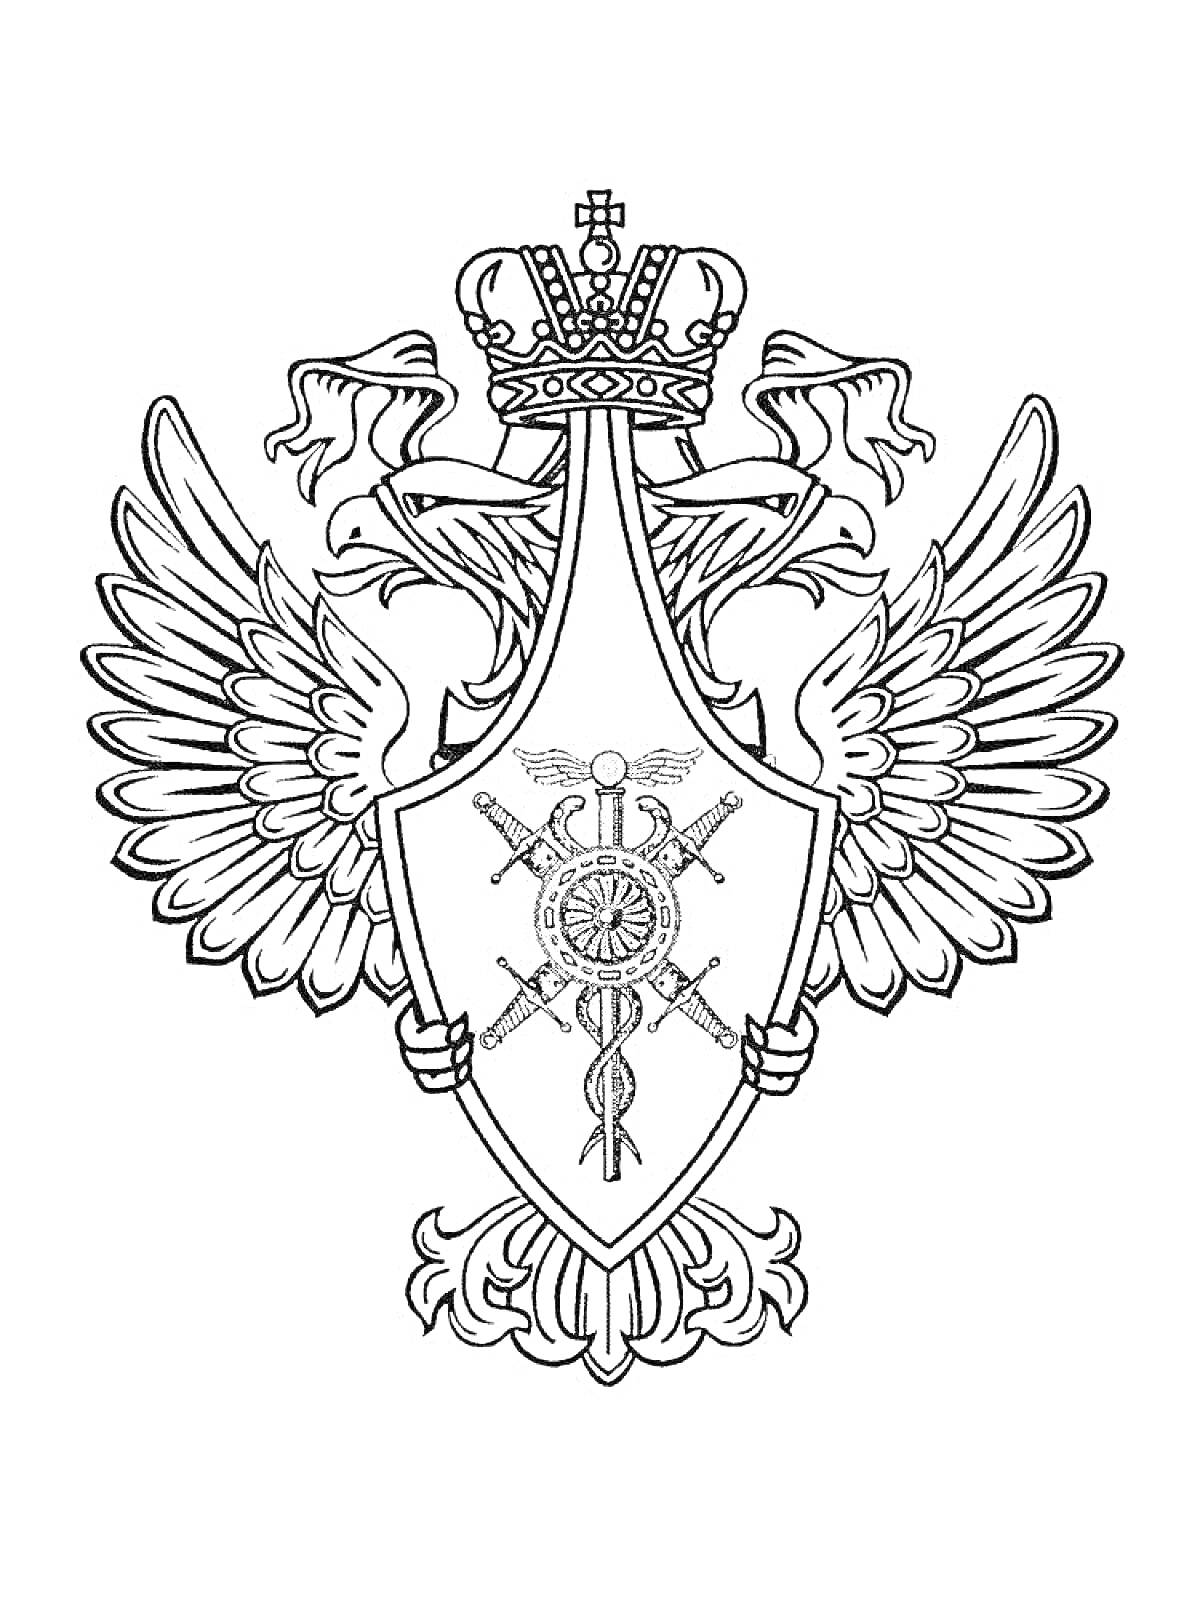 Раскраска Герб России с двуглавым орлом, державой, скипетром и мечом